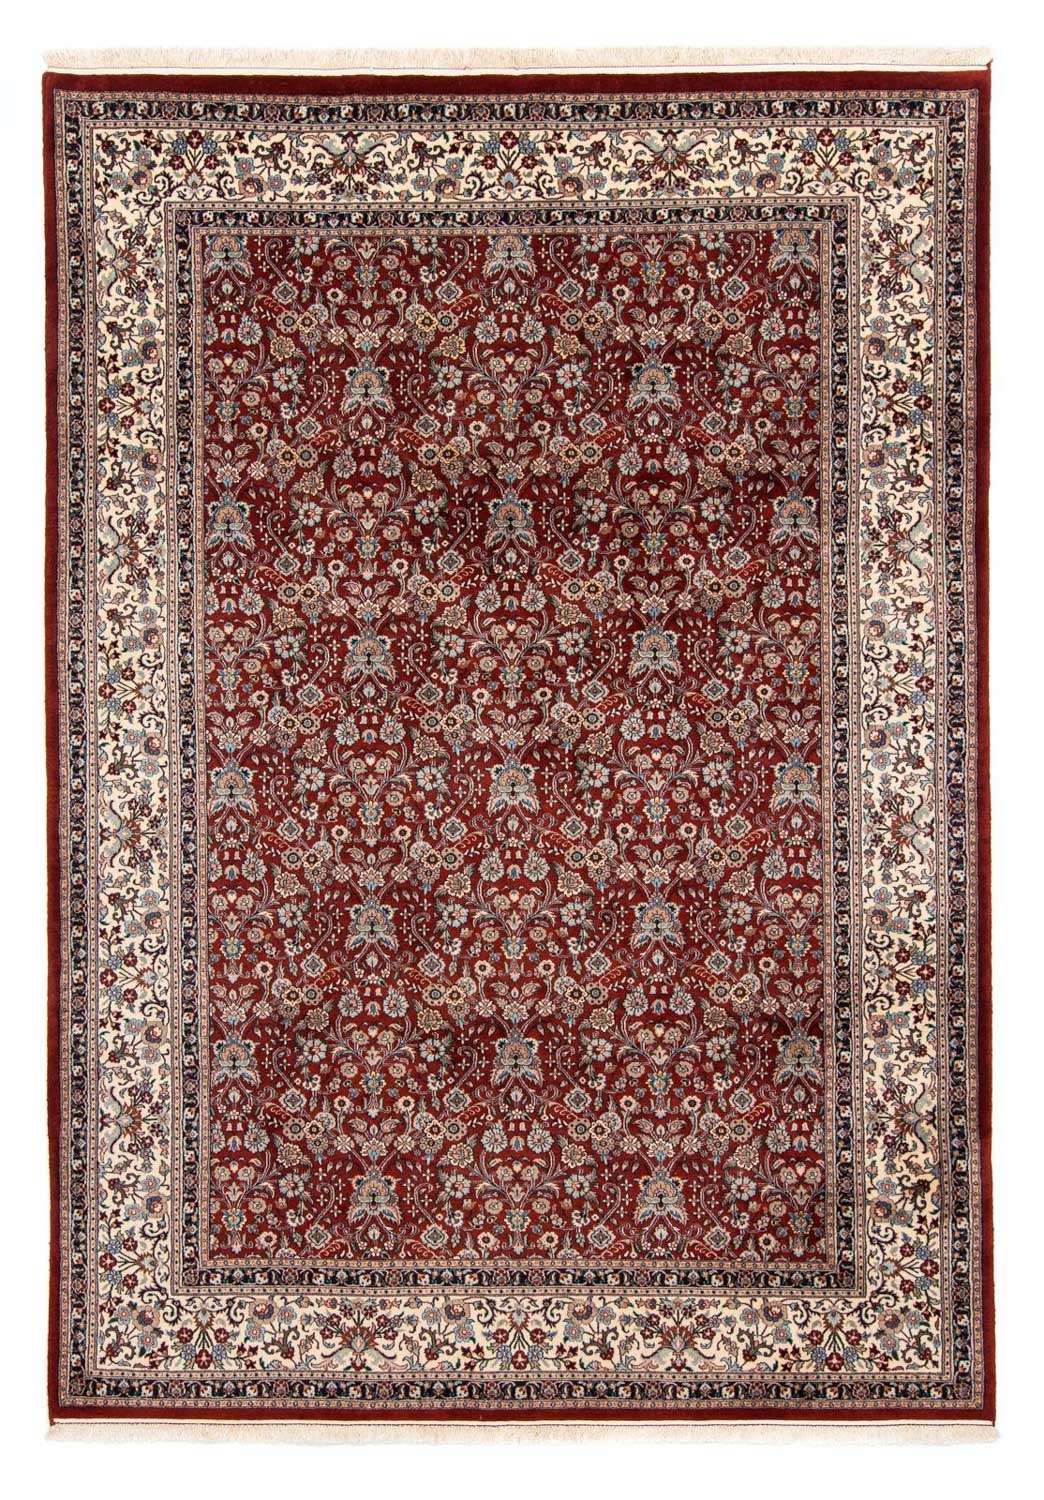 Alfombra persa - Clásica - 290 x 197 cm - rojo